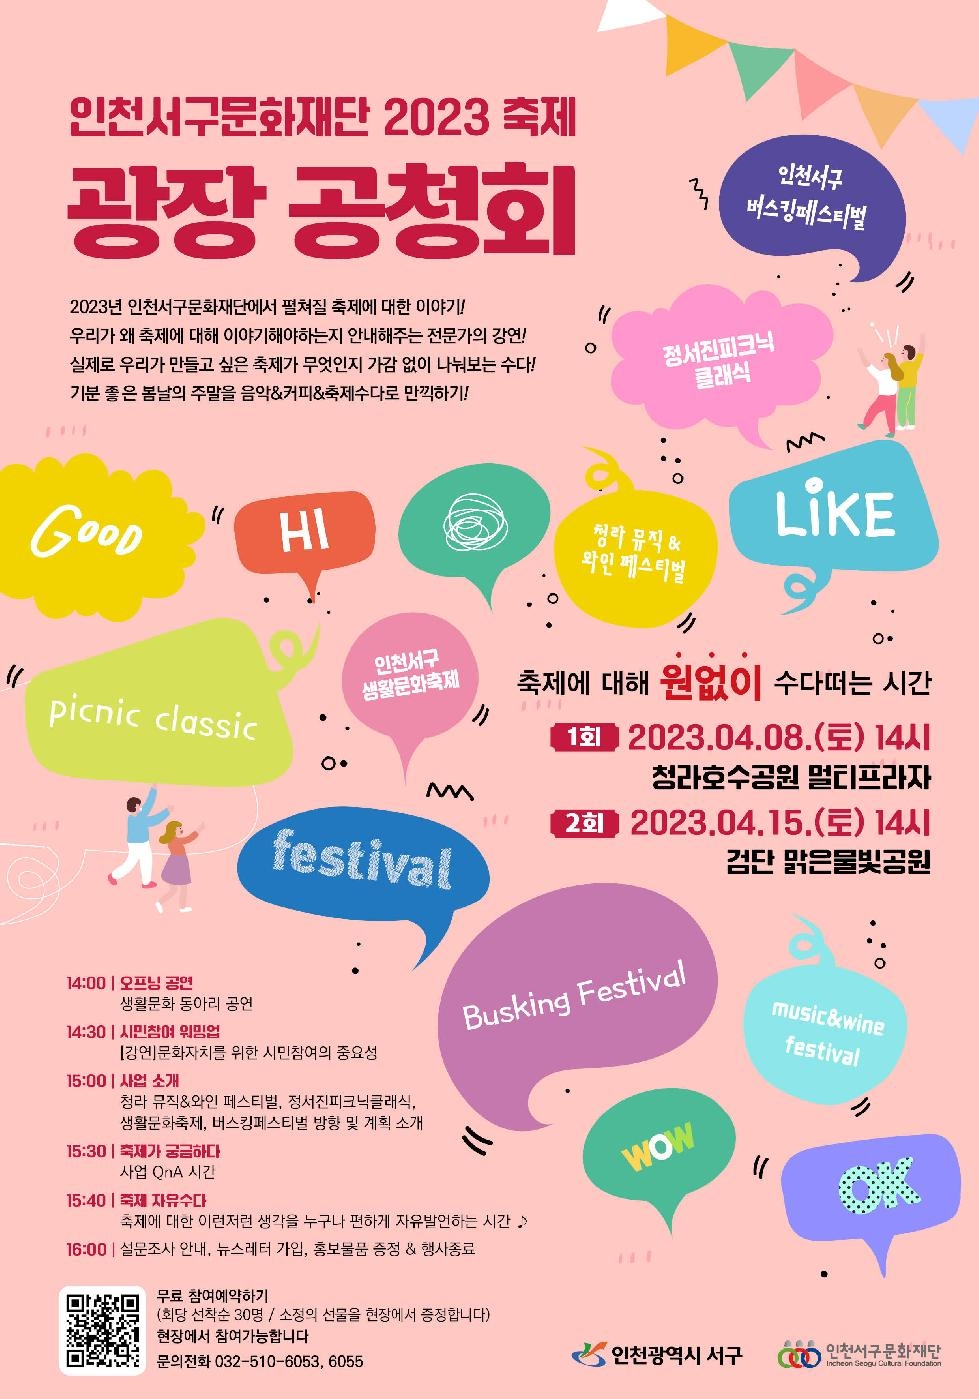 인천 서구문화재단, 주민과 함께 올해 열릴 축제 논의할 ‘광장 공청회’ 